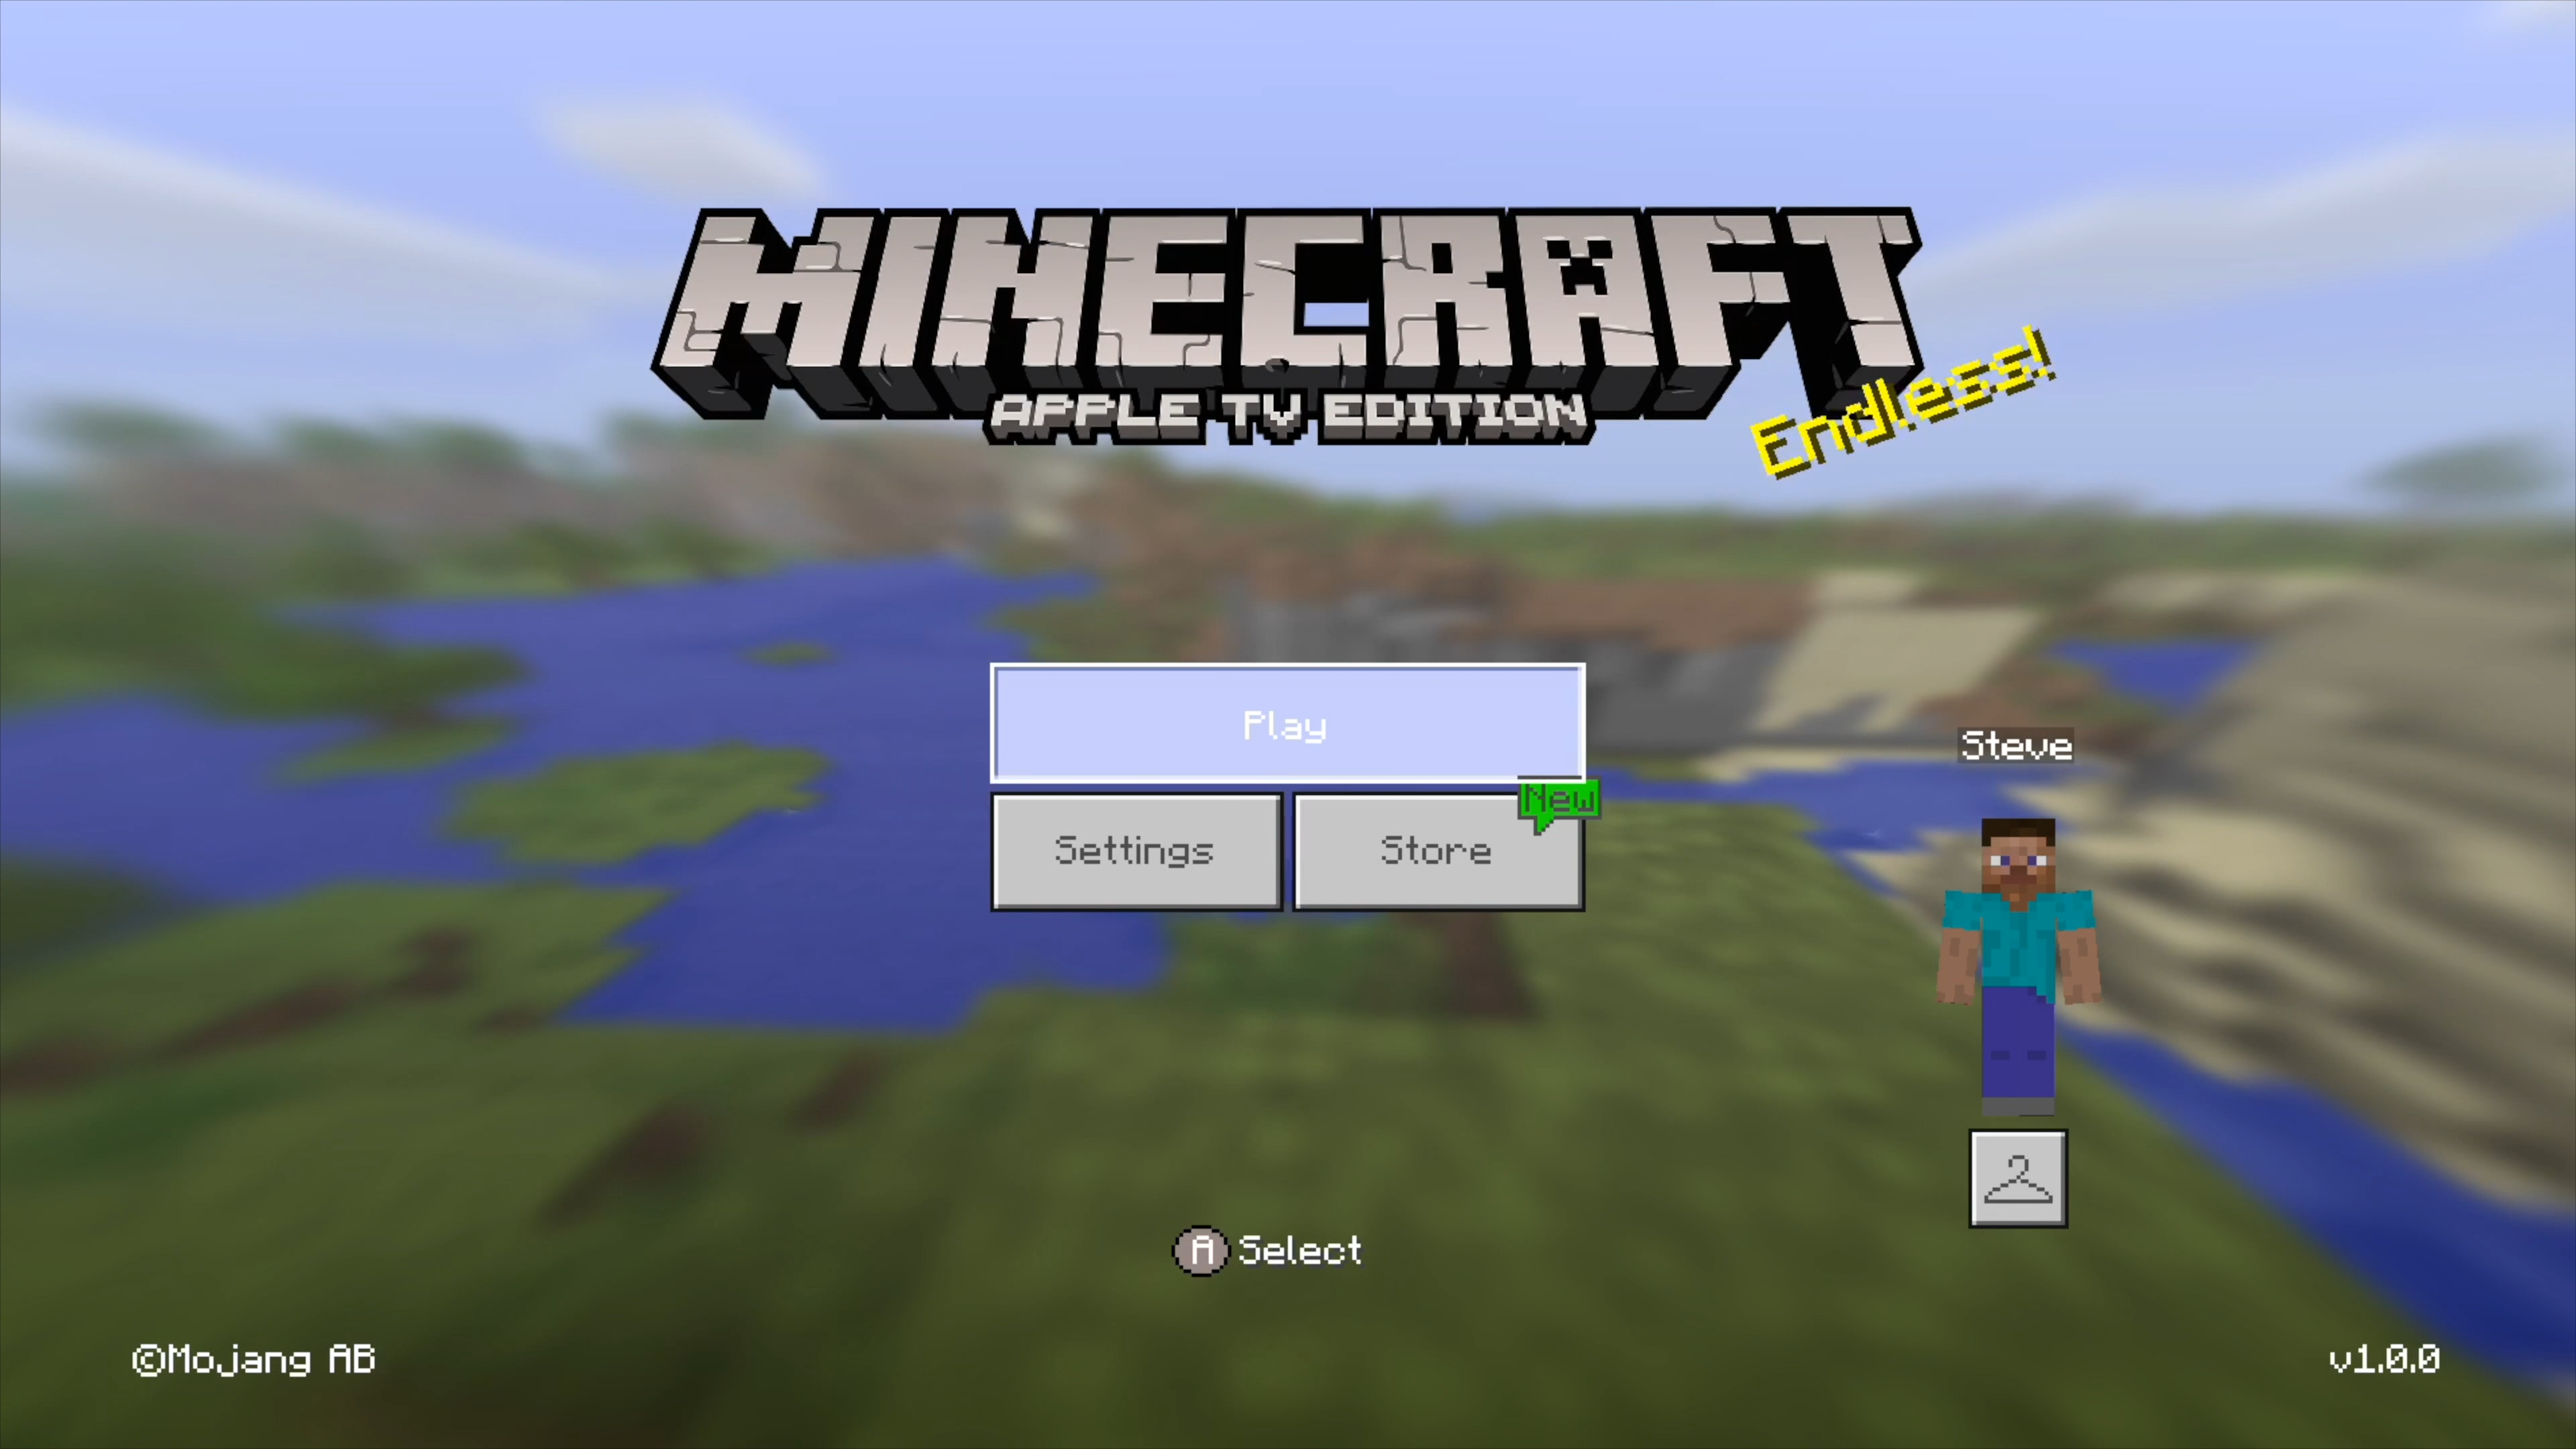 Minecraft: Xbox 360 Edition, Minecraft Wiki